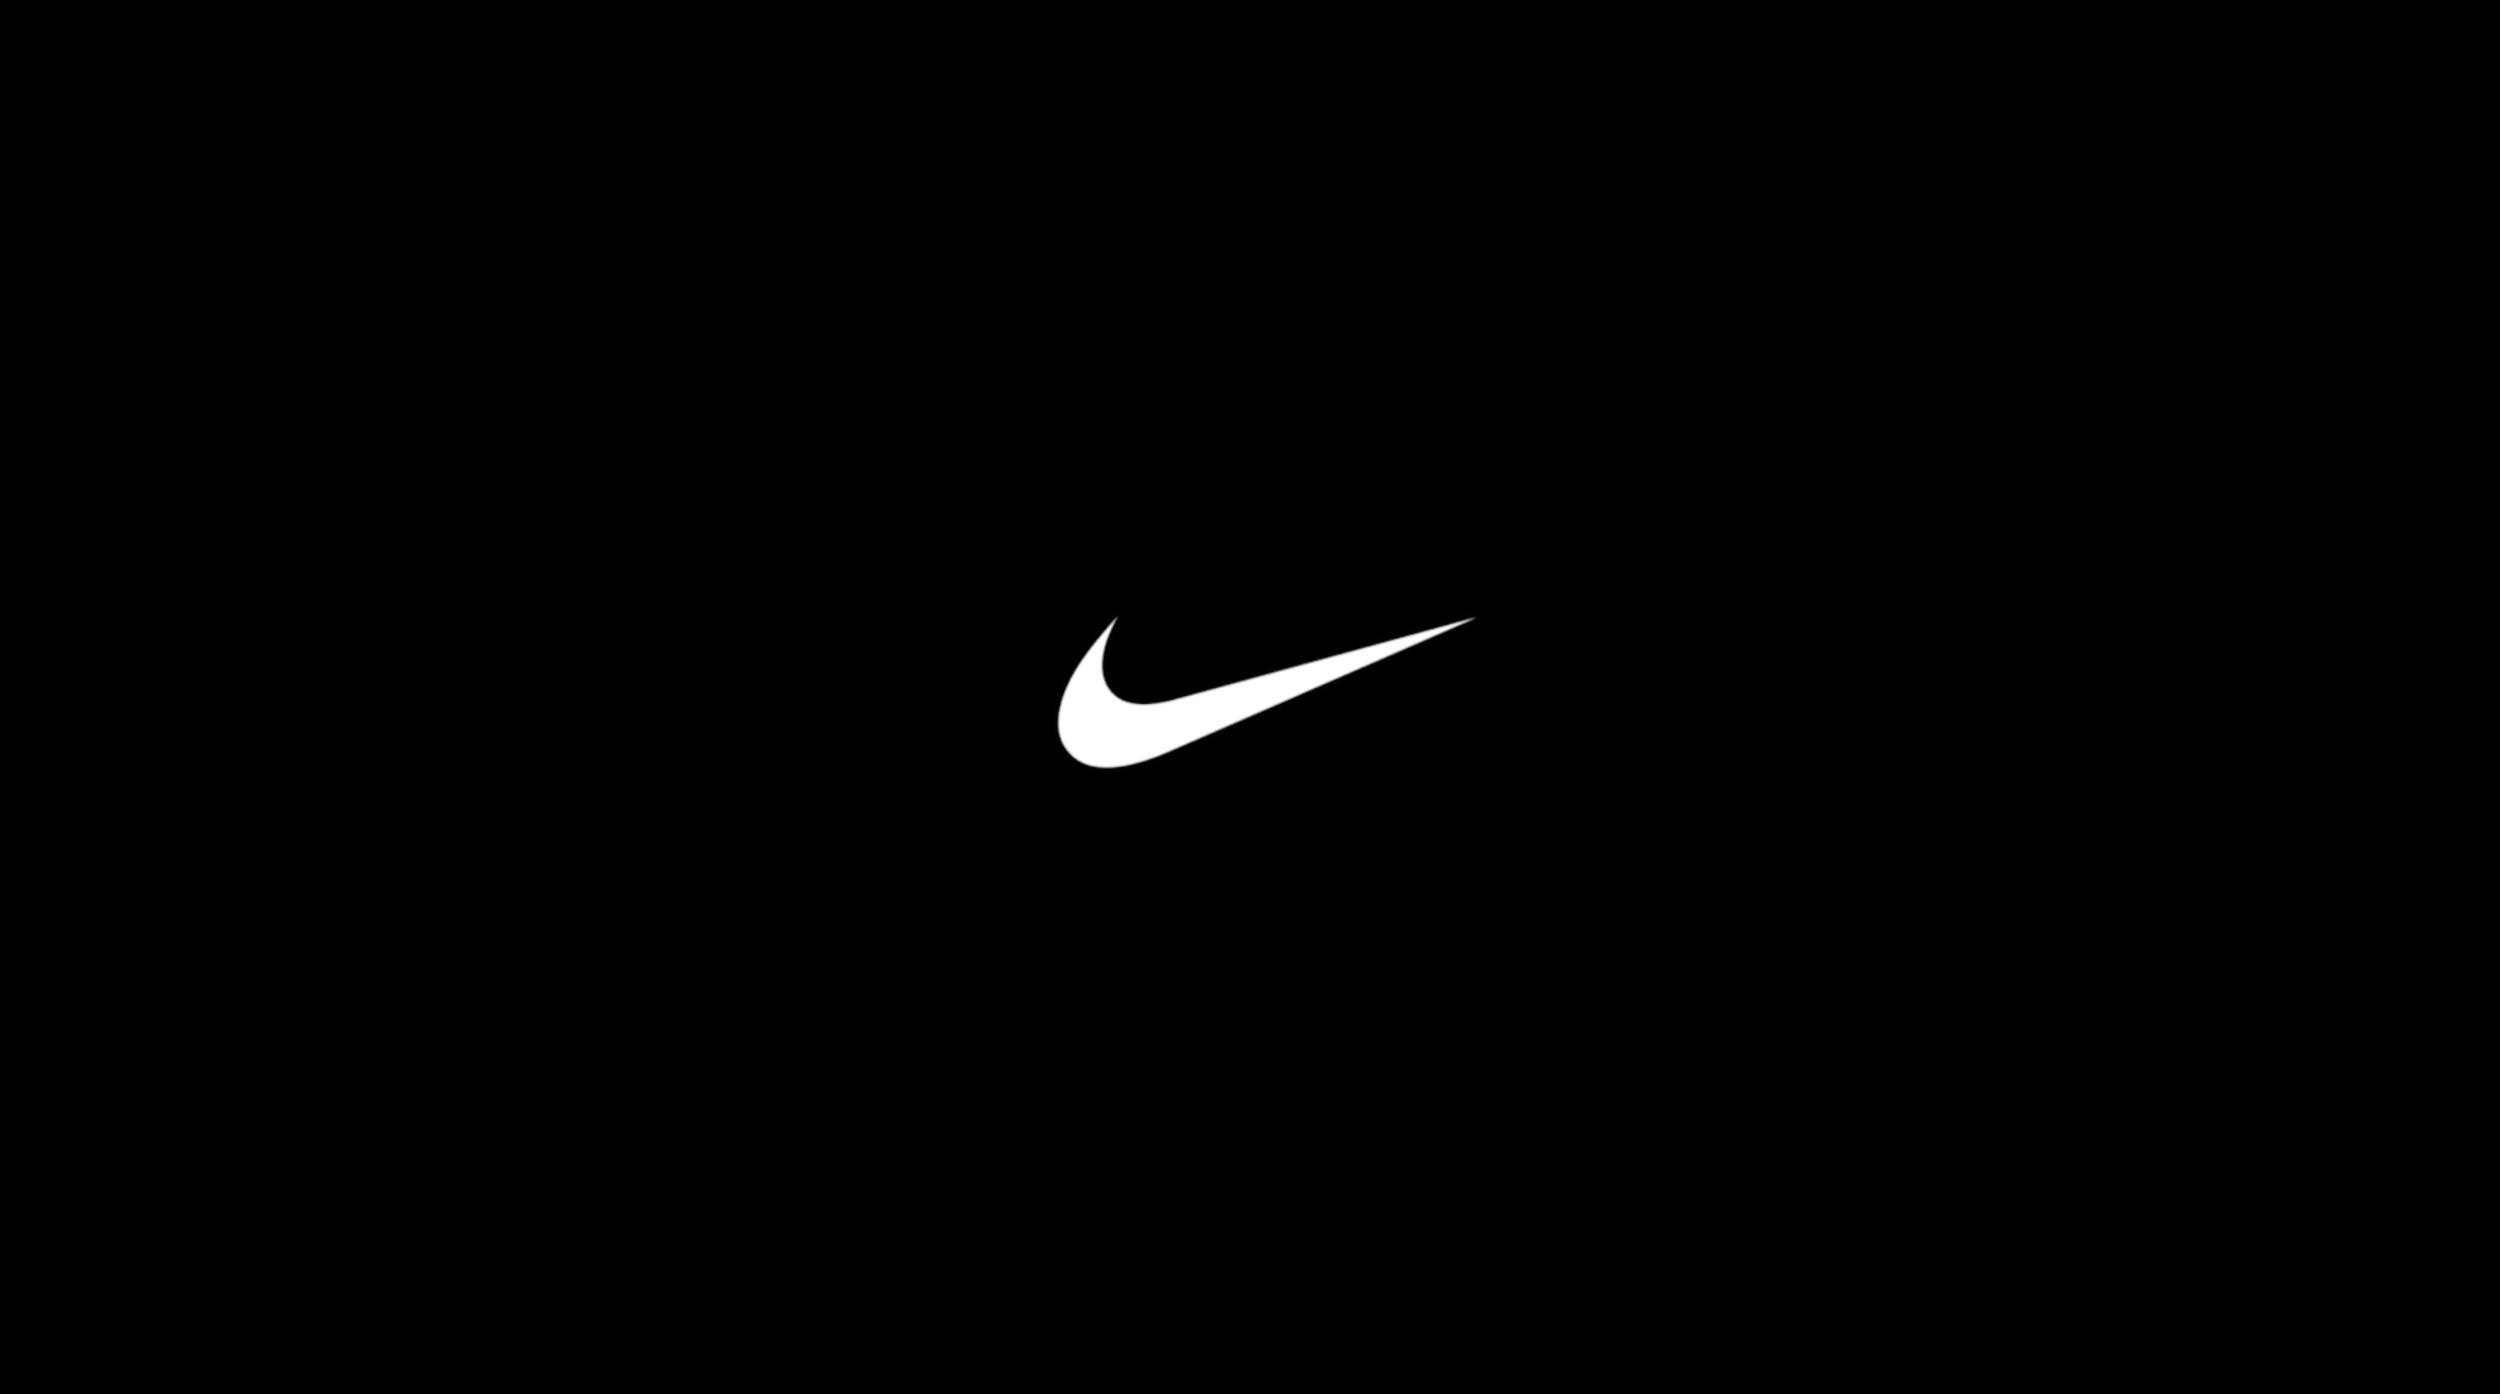 11 на черном фоне. Nike на черном фоне. Черные обои. Заставка найк. Nike логотип на черном фоне.